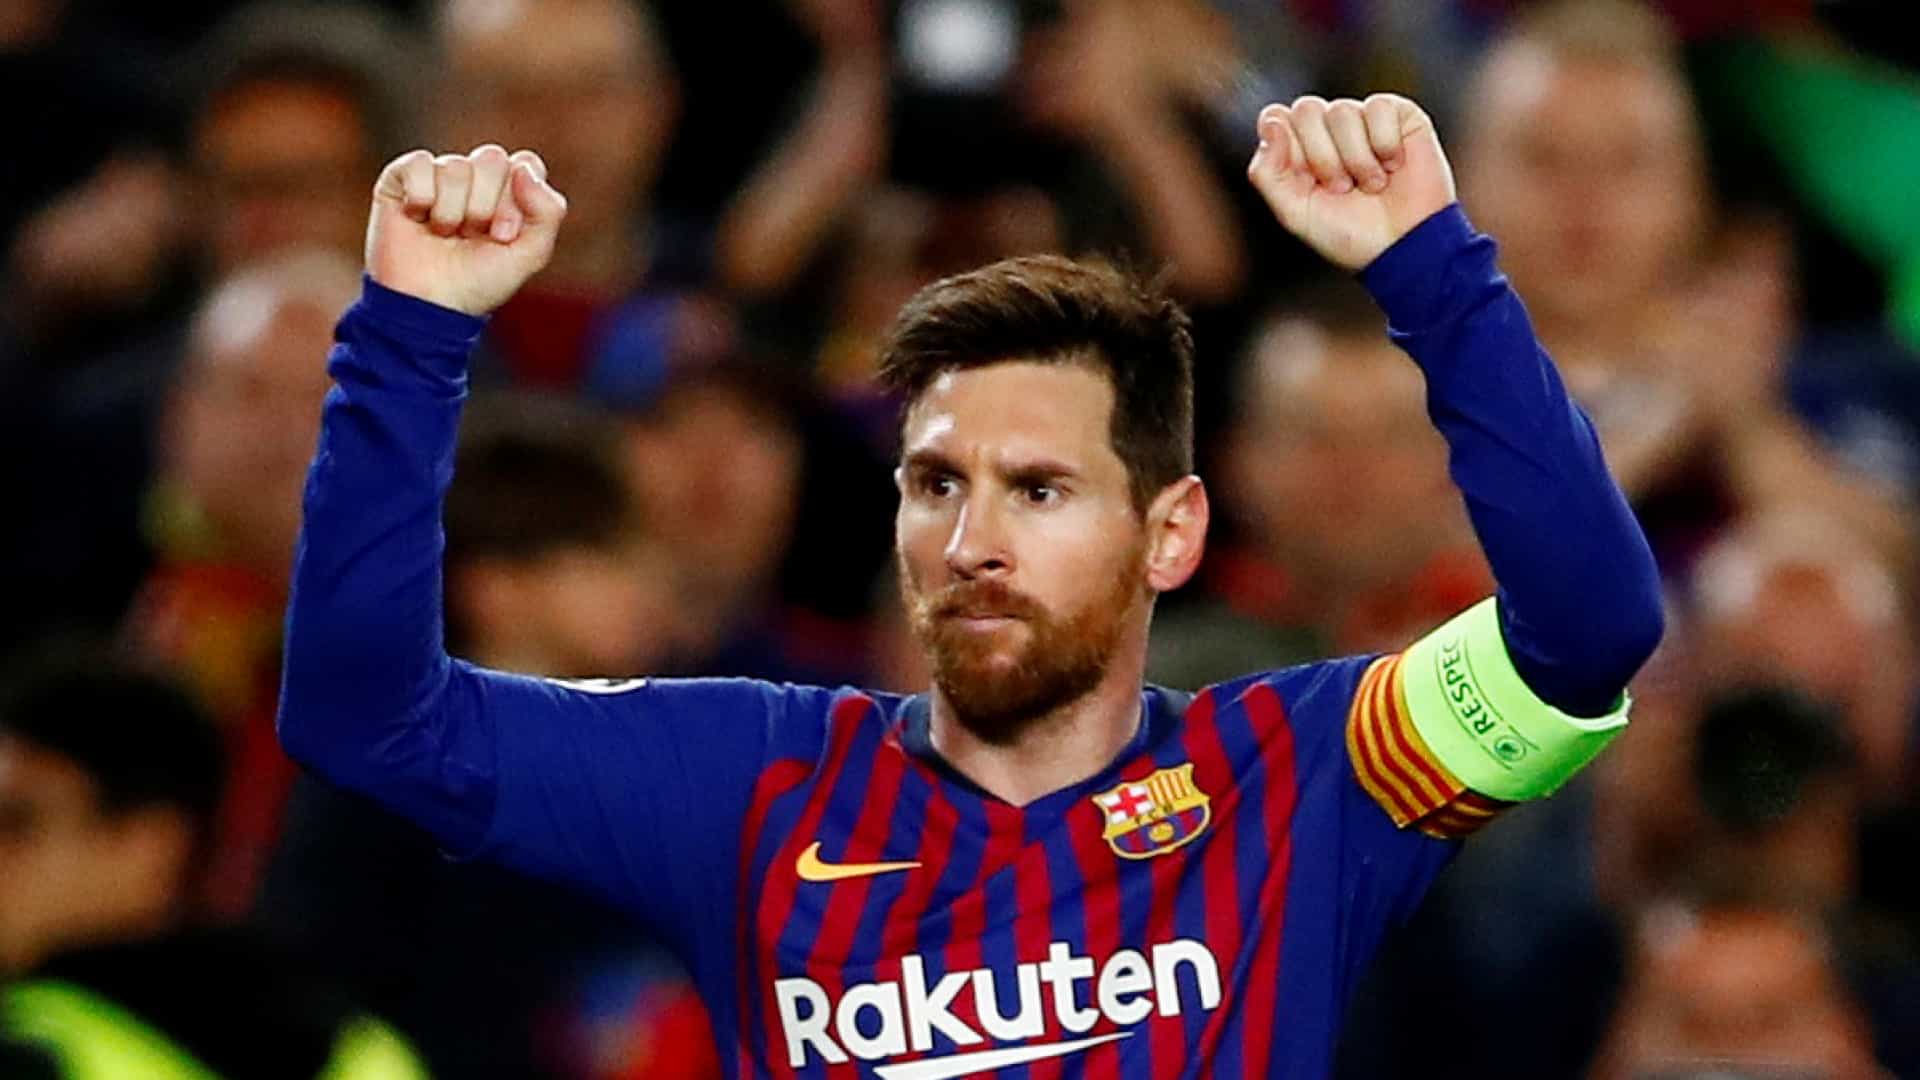 Messi tenta consolidar soberania com mais uma final da Champions